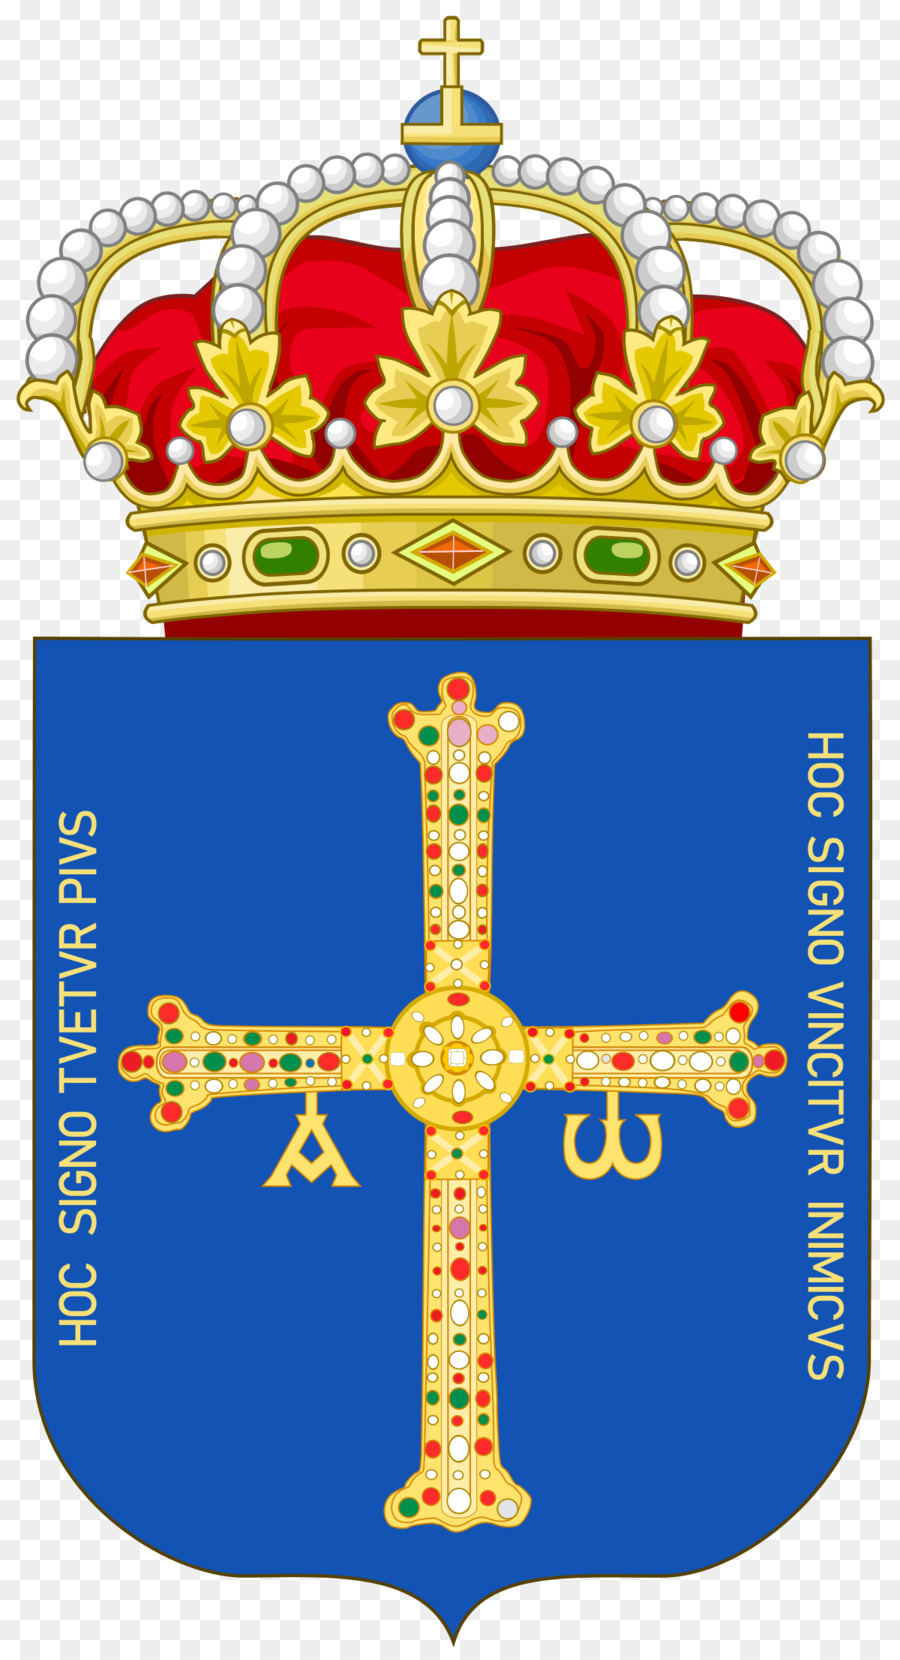 Vương quốc của Asturias chiến Thắng Qua huy của Asturias - giác ngộ